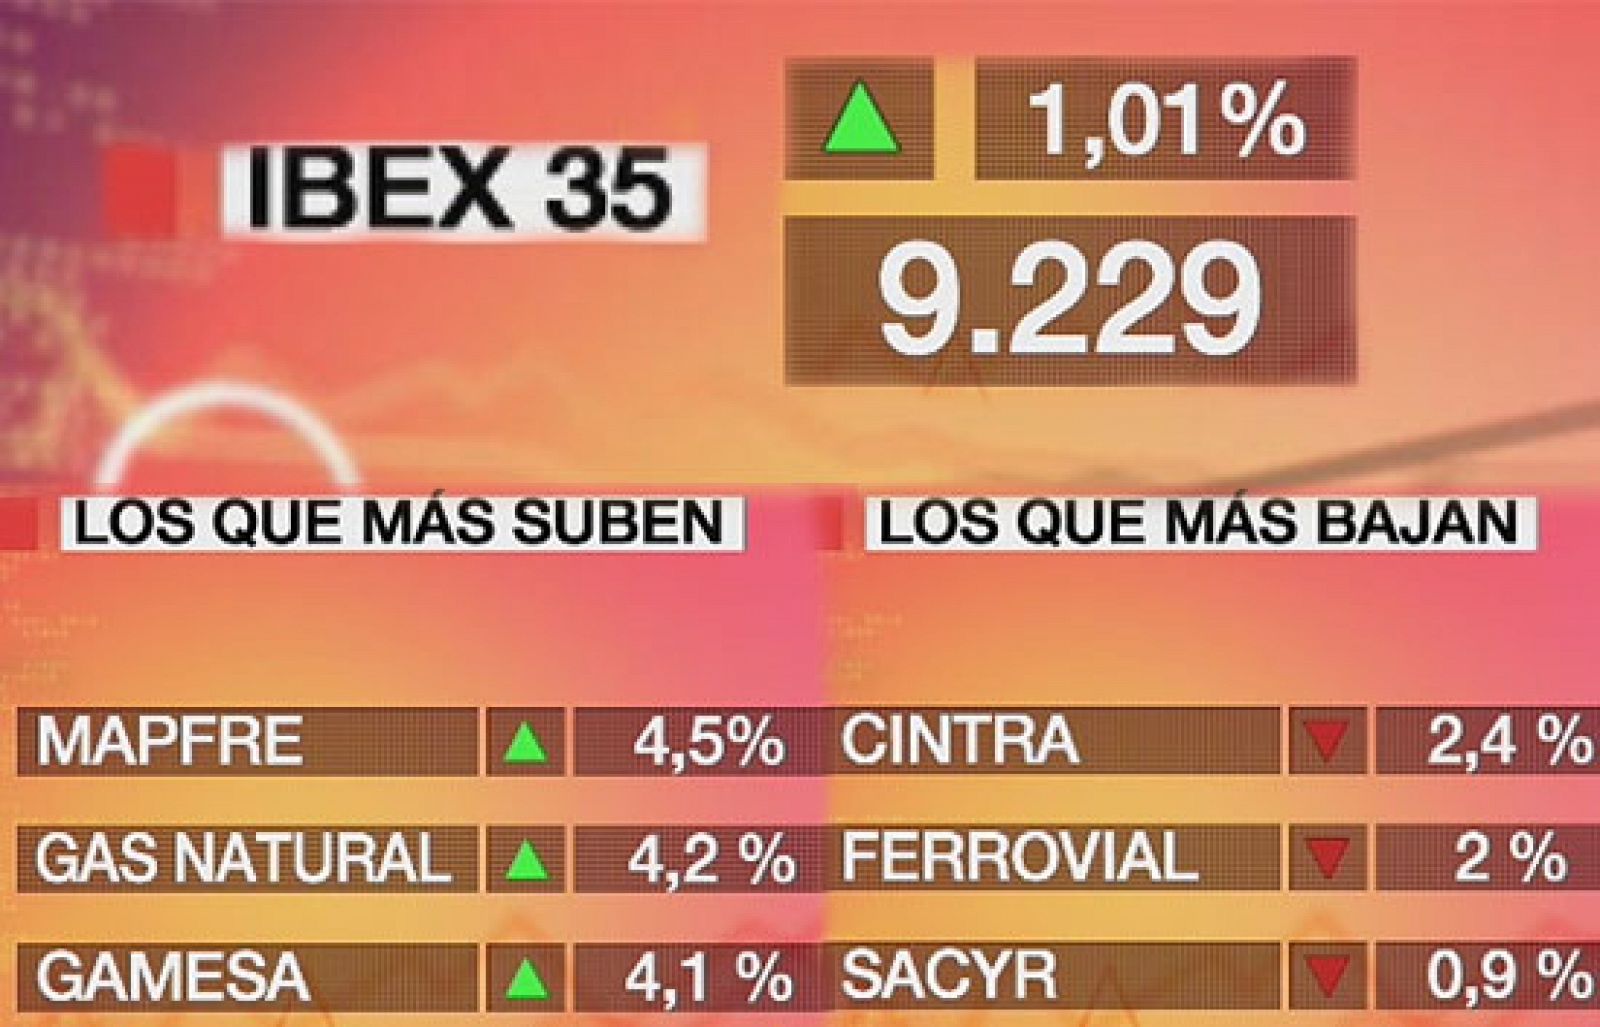 Economía 24H - El Ibex 35 consigue liquidar las pérdidas que había acumulado desde que empezó 2009